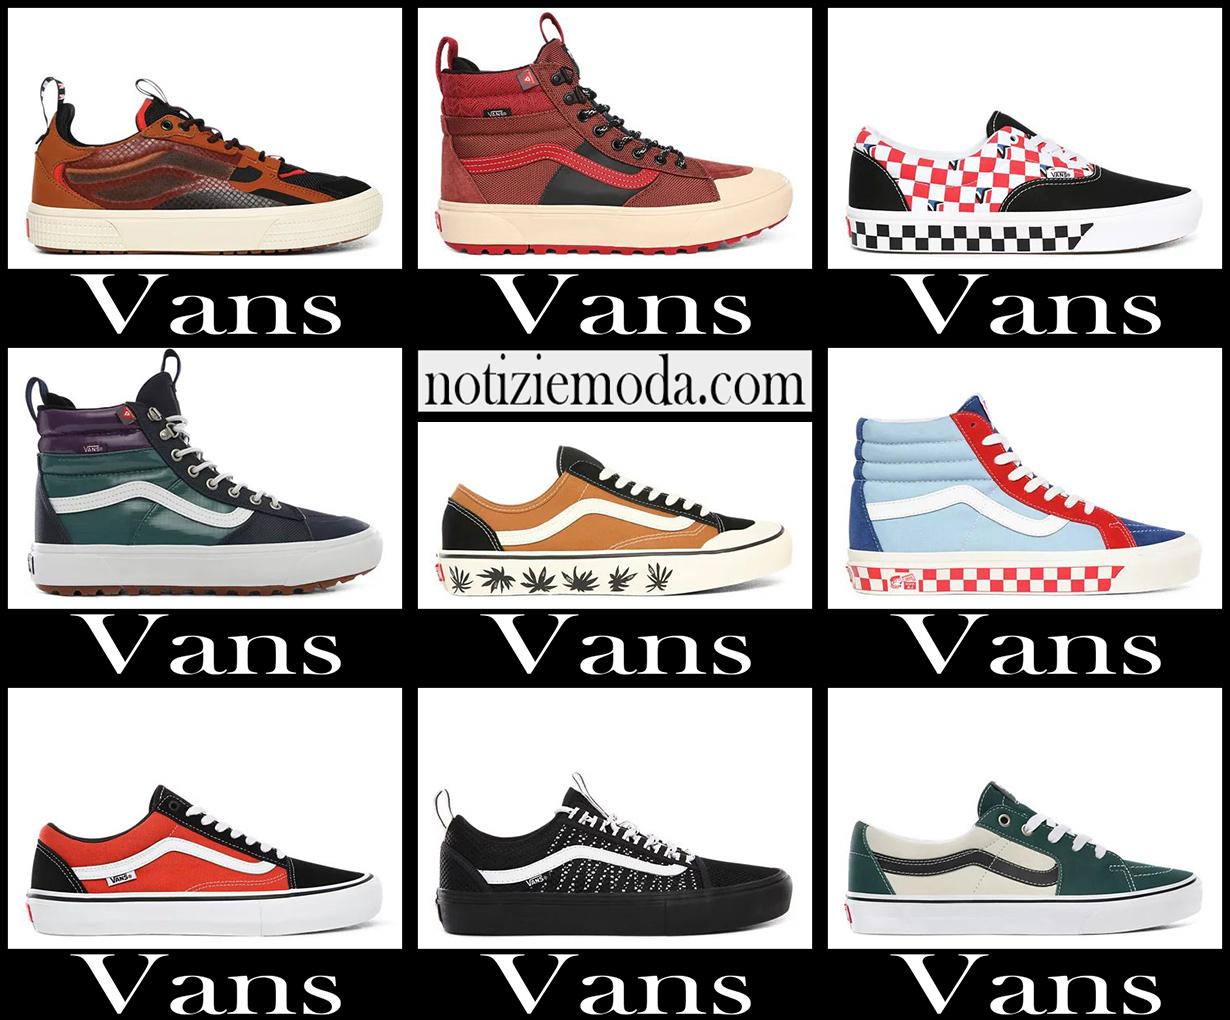 Nuovi arrivi sneakers Vans 2021 calzature moda uomo شيروكي